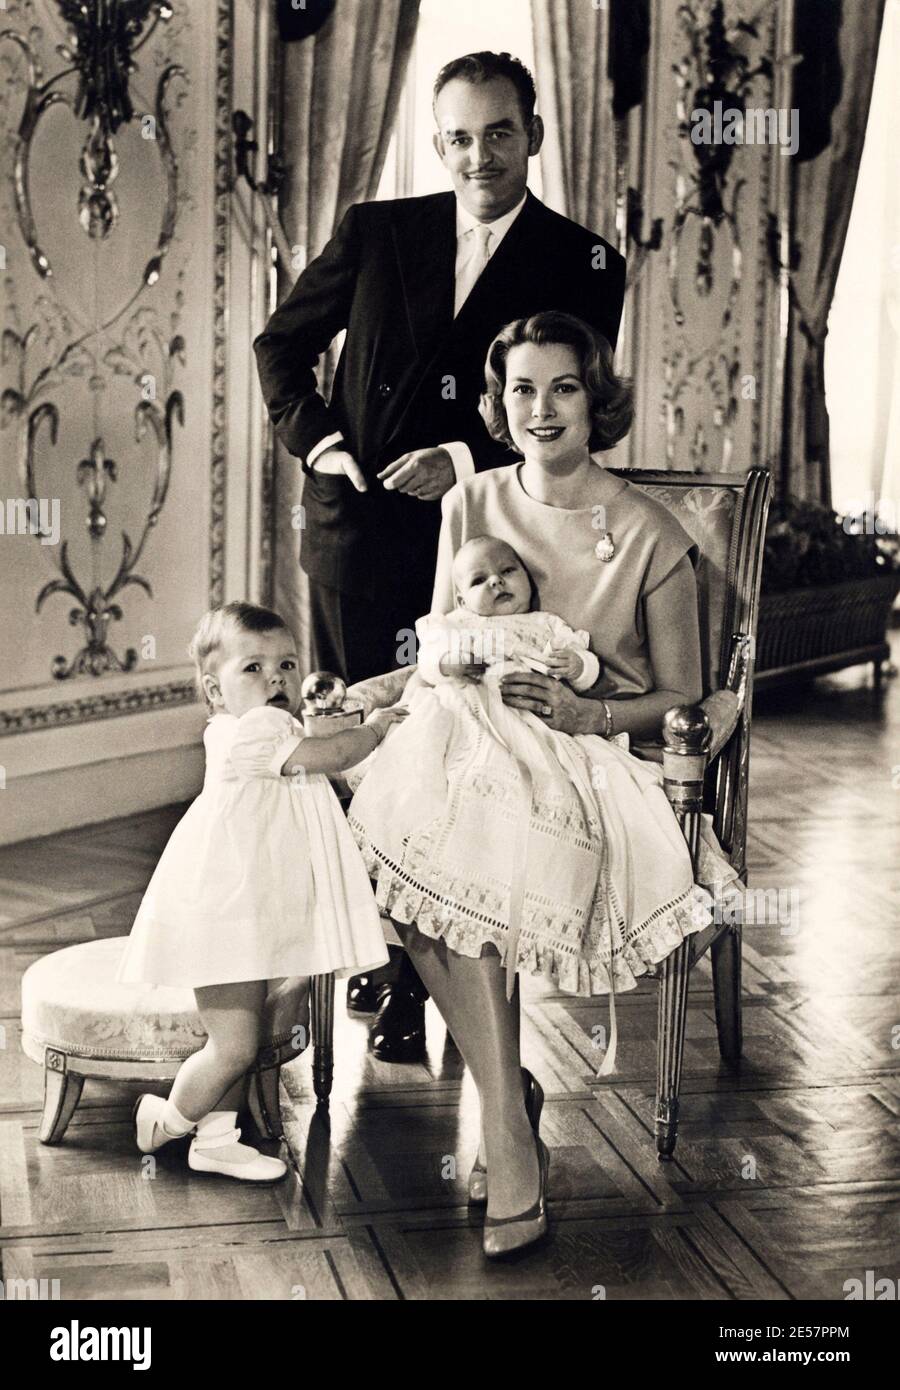 1958 c., MONACO  : The royal family GRIMALDI  of MONACO , RAINIER III ( born in  Monaco , 1923 ) and GRACE KELLY (  1928 - 1982 ) with sons CAROLINE and ALBERT . Official portrait by Howell Conant   - ROYALTY - REALI nobiltà - nobility - ritratto - nobili - RANIERI - CAROLINA - ALBERTO - principe - principessa - principi - cravatta - tie - baffi - moustache - personalità da giovani bambini - personality when was little child boy - personalities ----- ONLY EDITORIAL ---NON PER USO PUBBLICITARIO - NOT FOR ADVERTISING ----   Archivio GBB Stock Photo